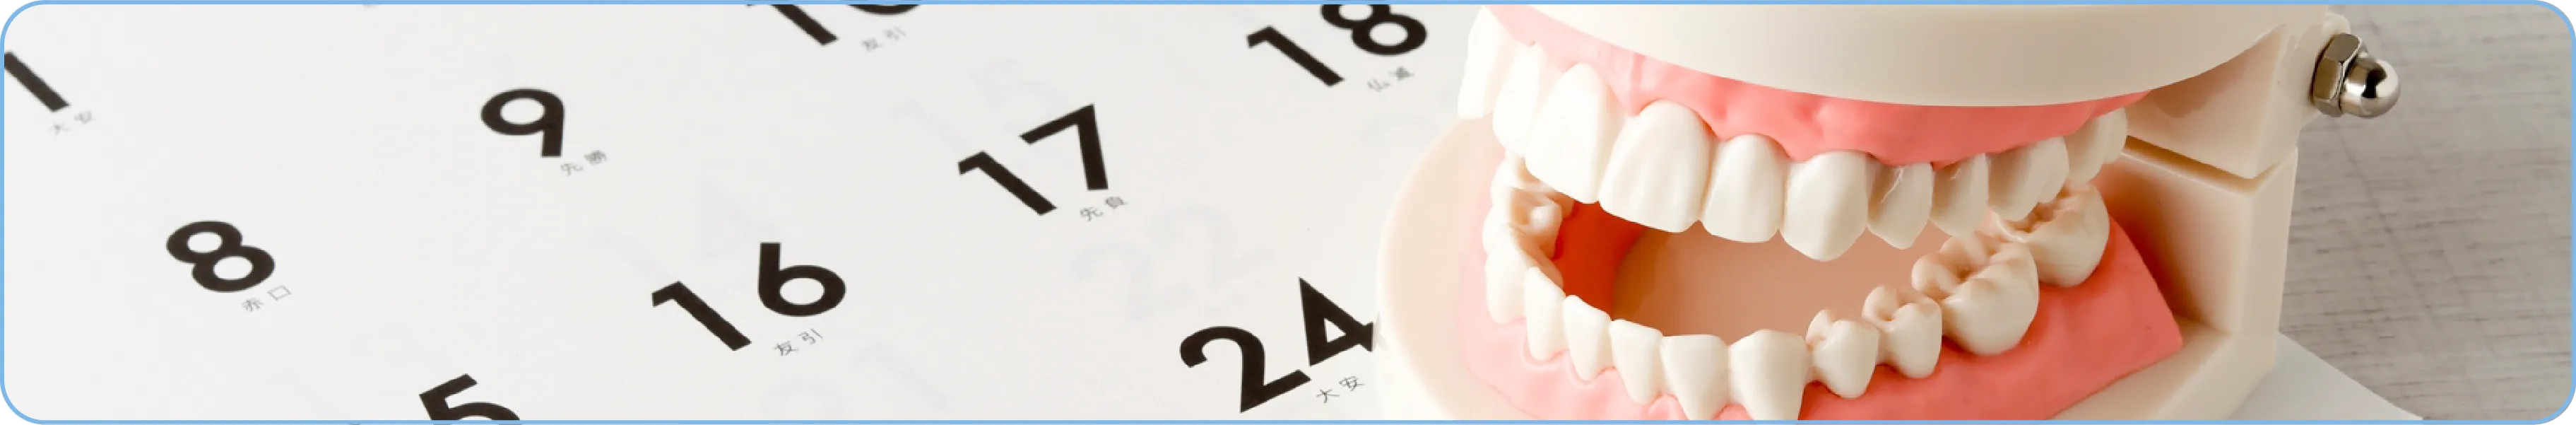 生涯健康な歯で過ごすために予防歯科・定期健診